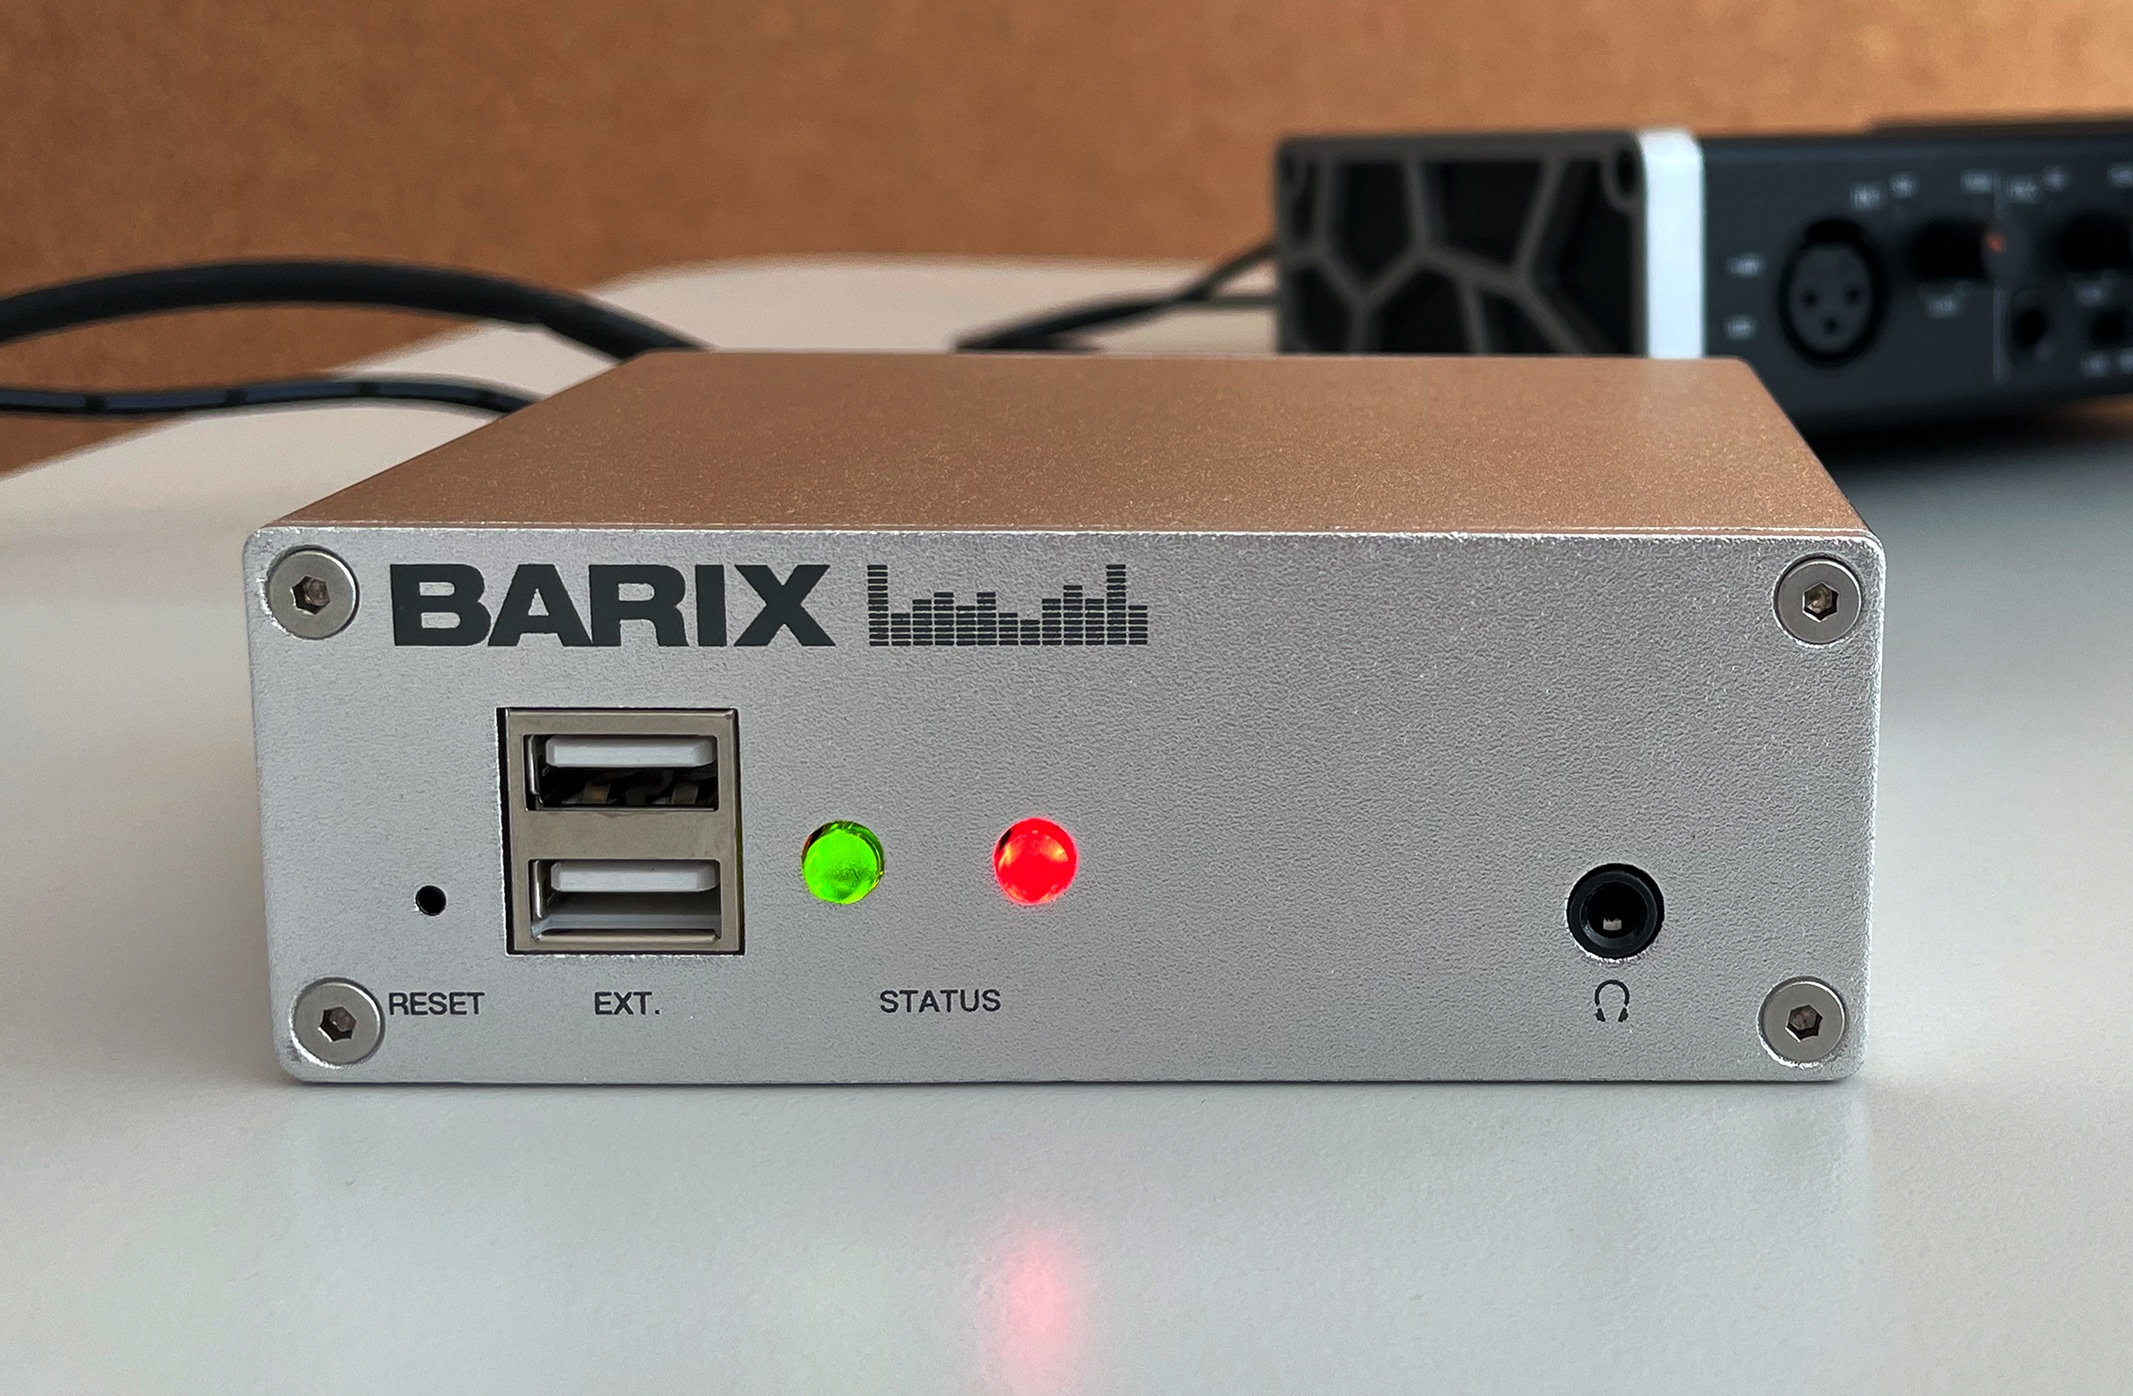 barix extreamer to megaseg